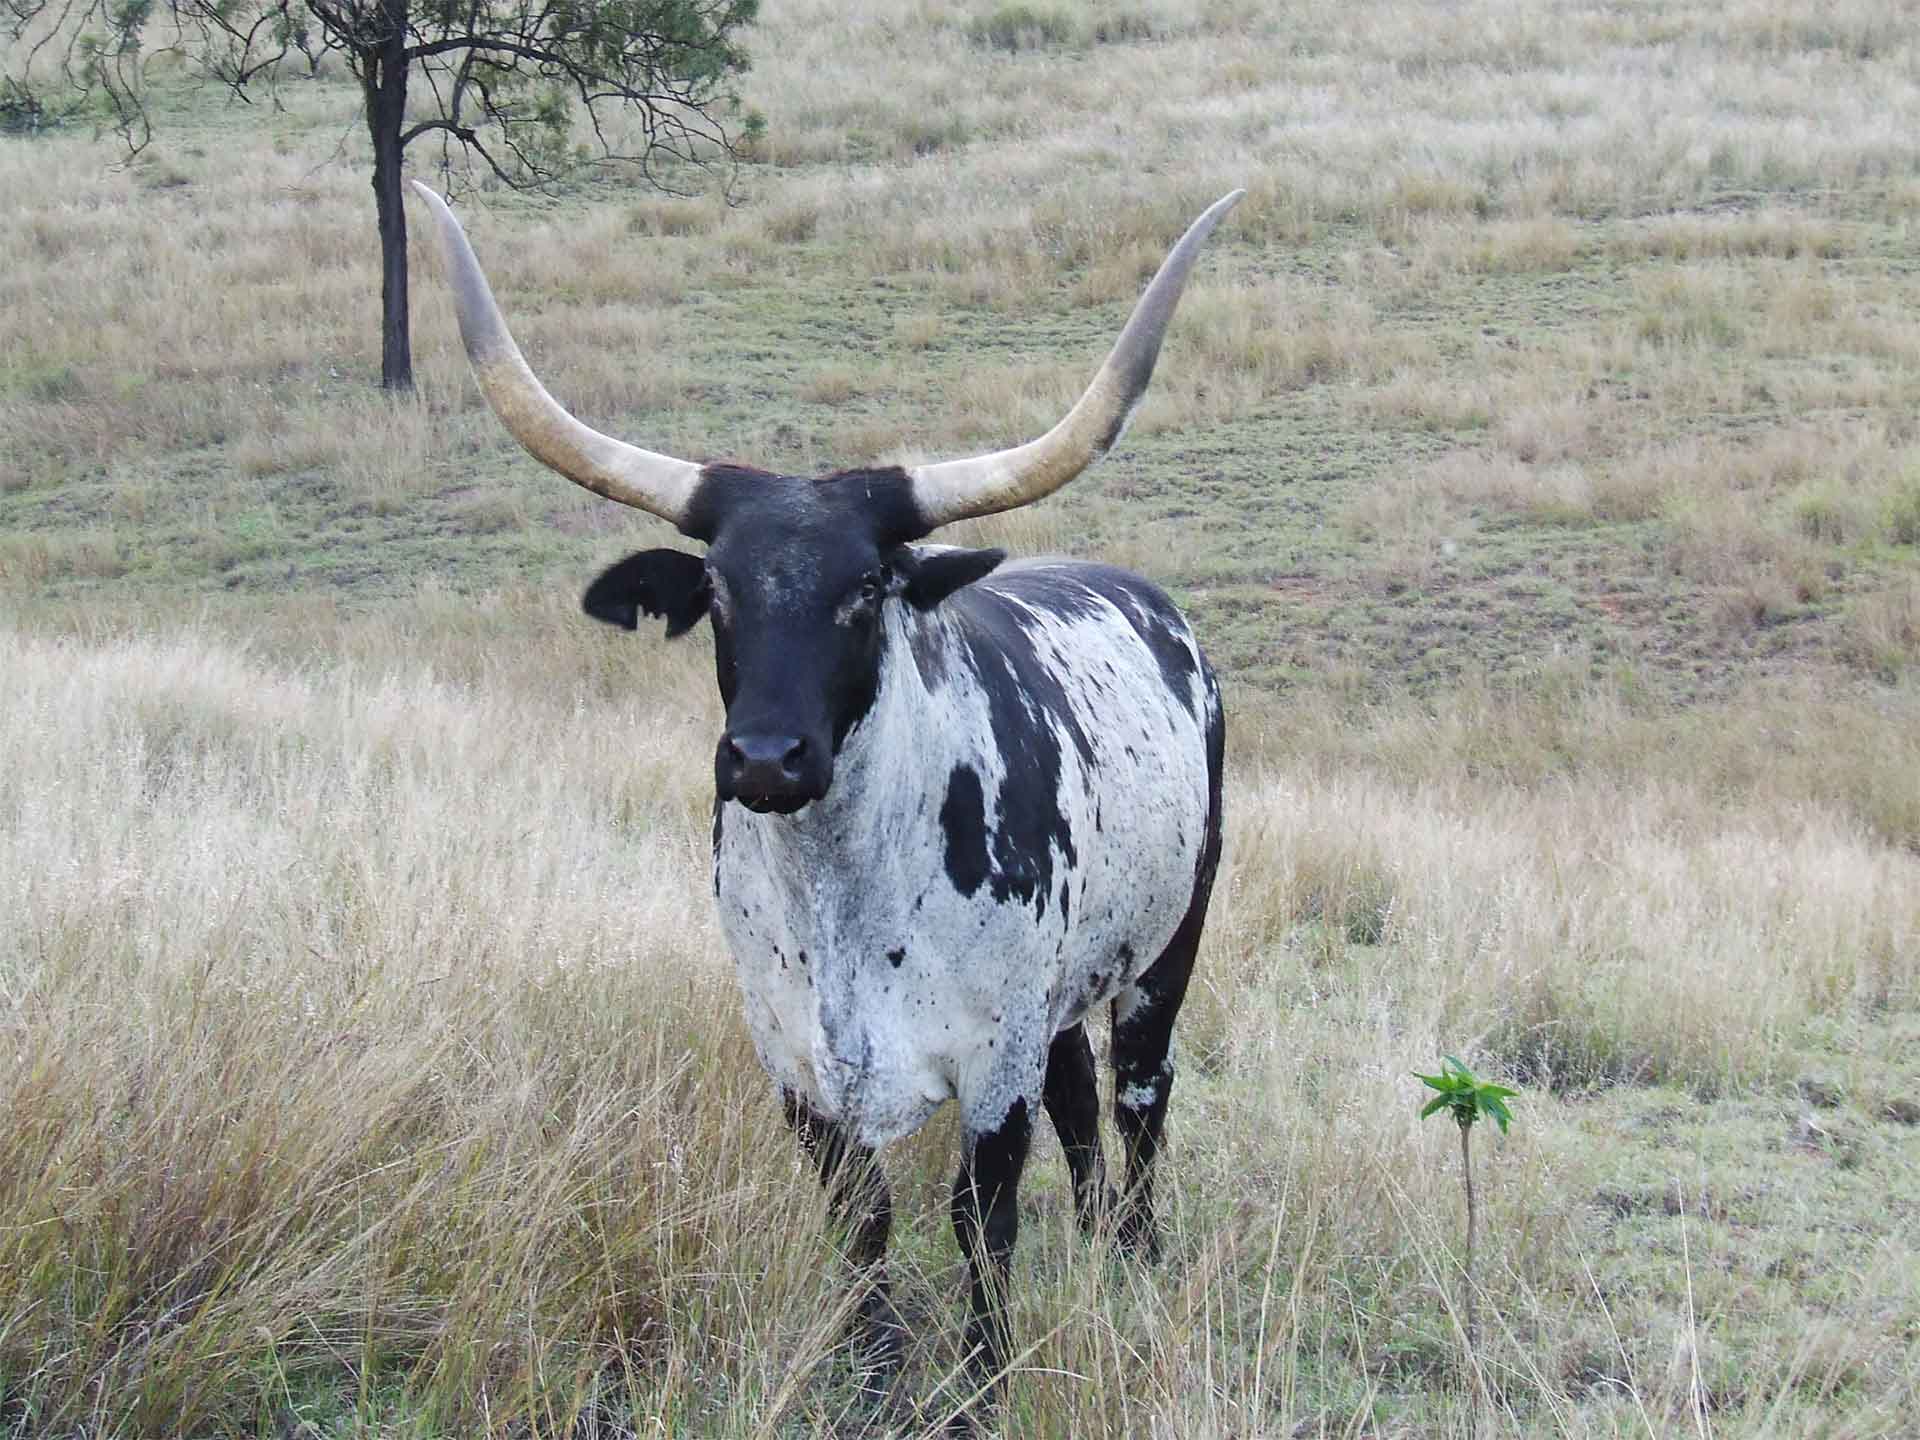 Jerakala Livestock